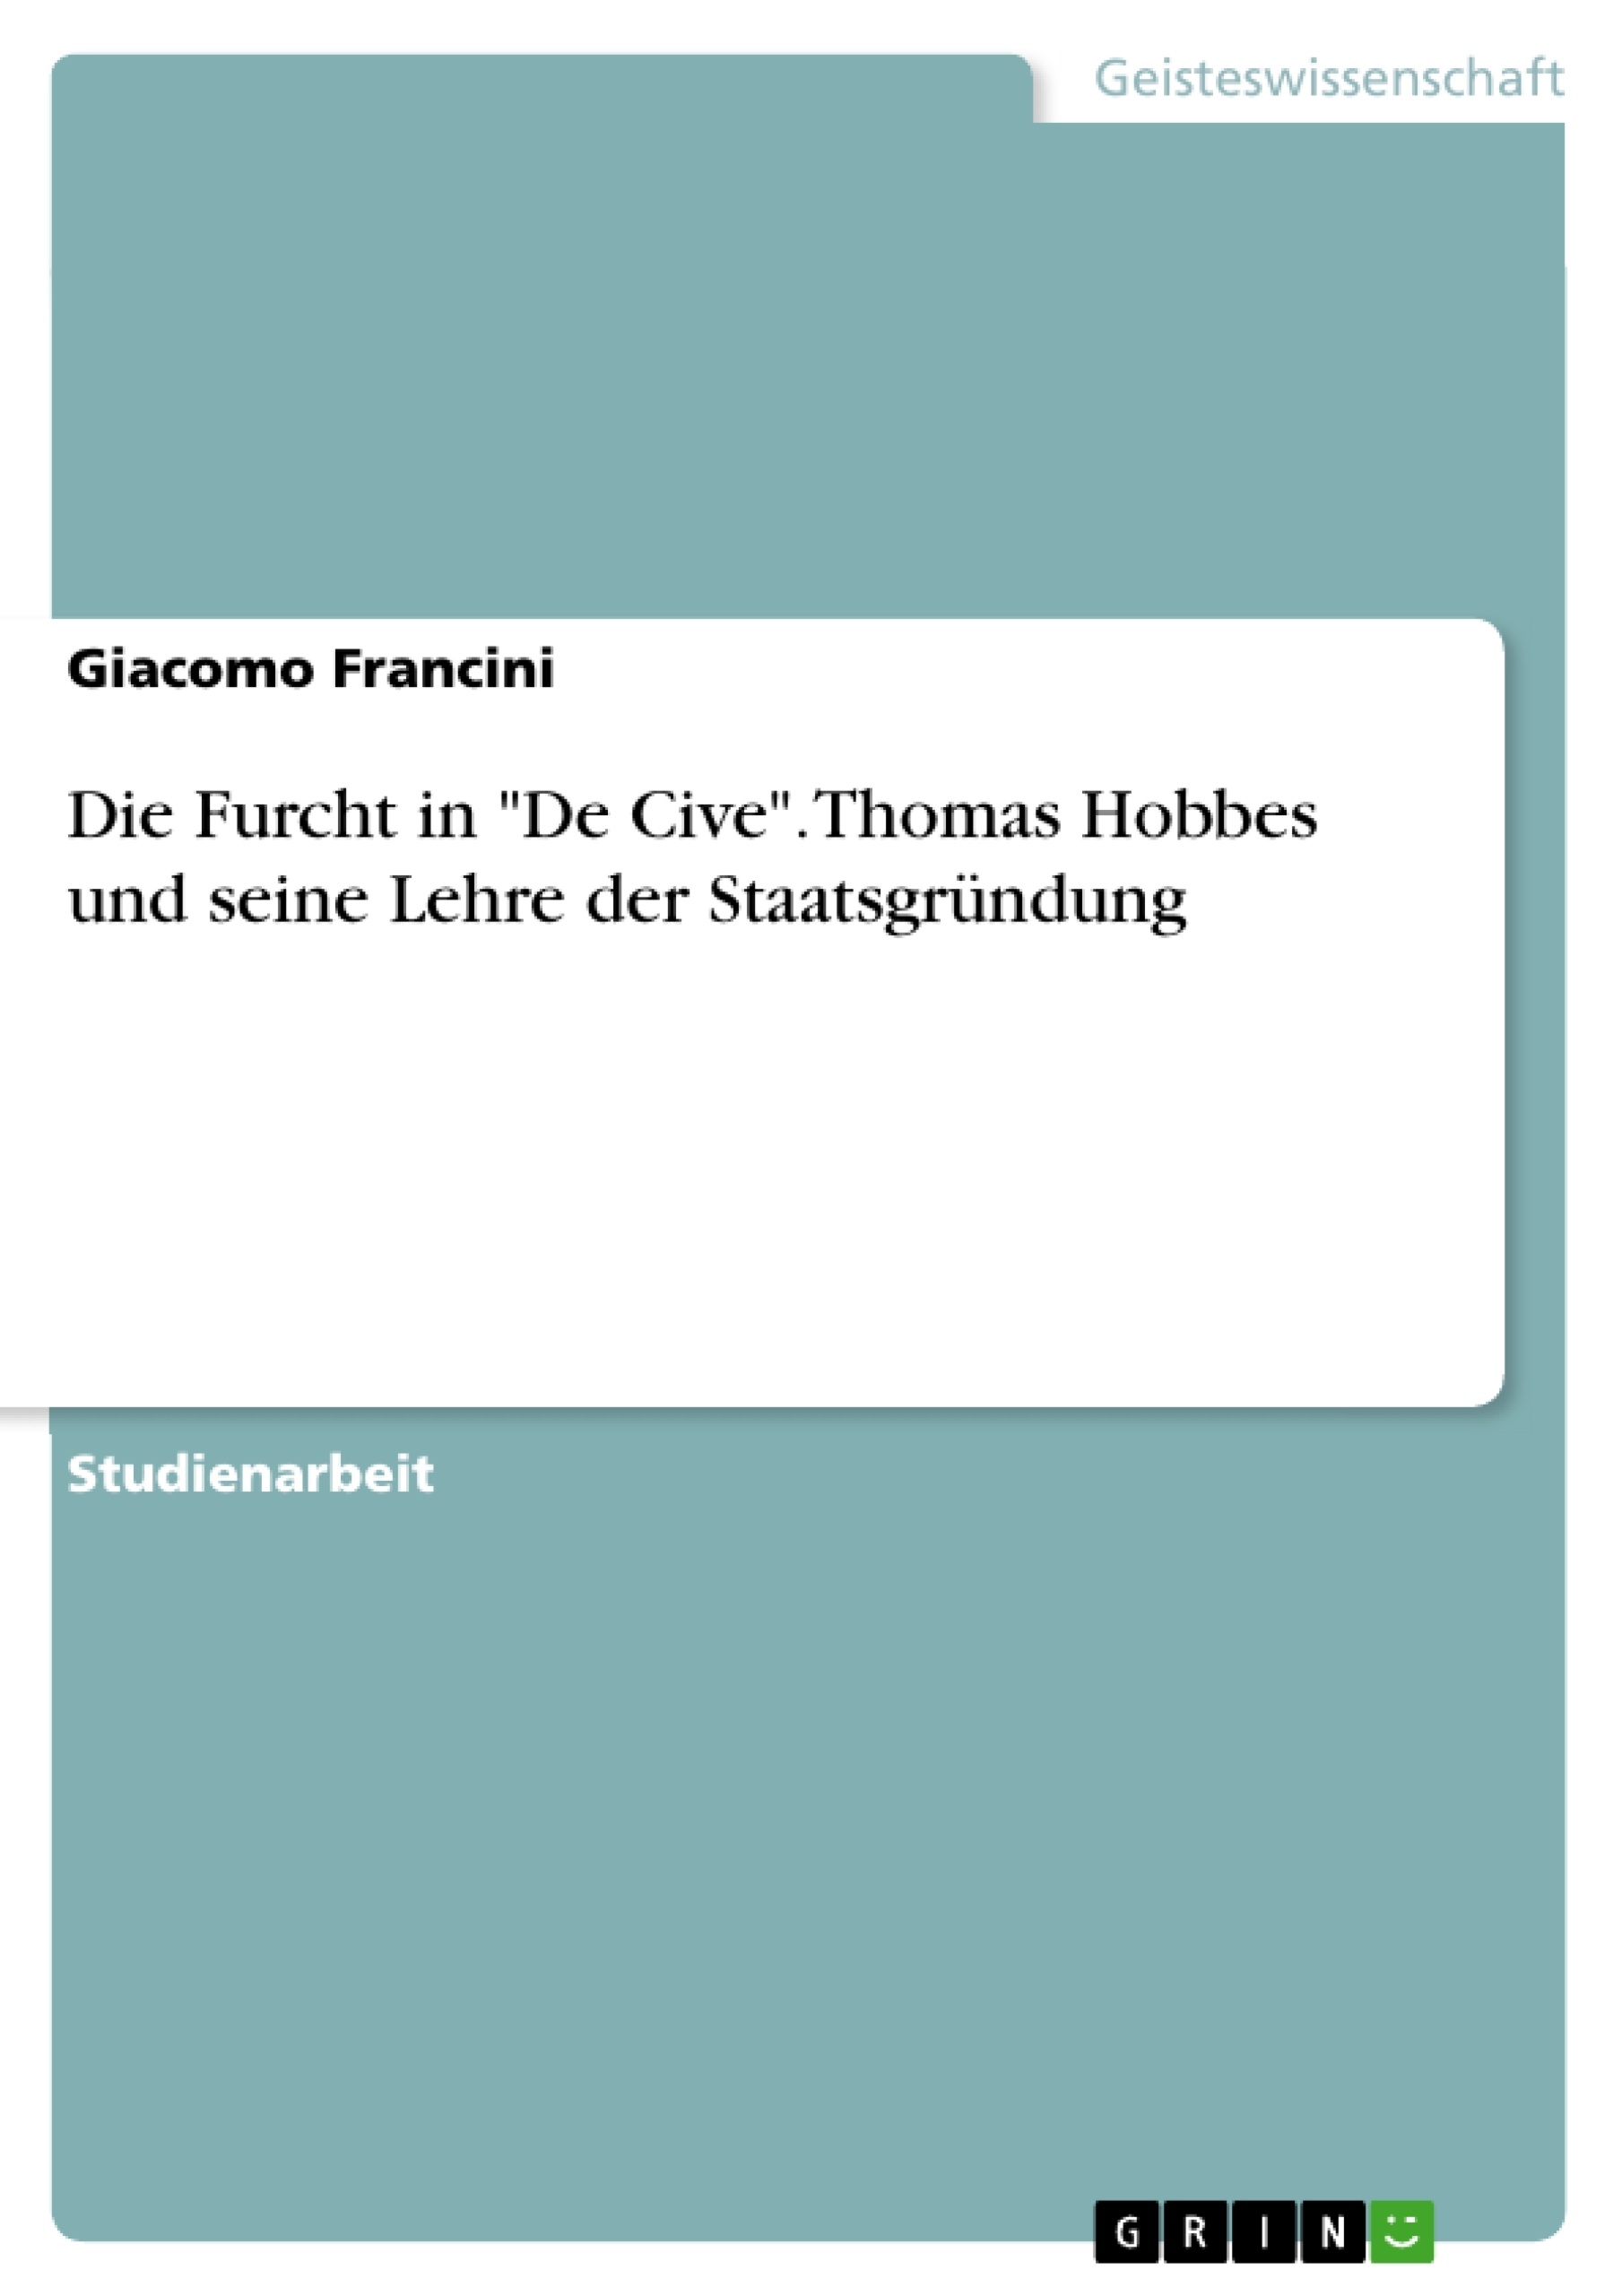 Título: Die Furcht in "De Cive". Thomas Hobbes und seine Lehre der Staatsgründung